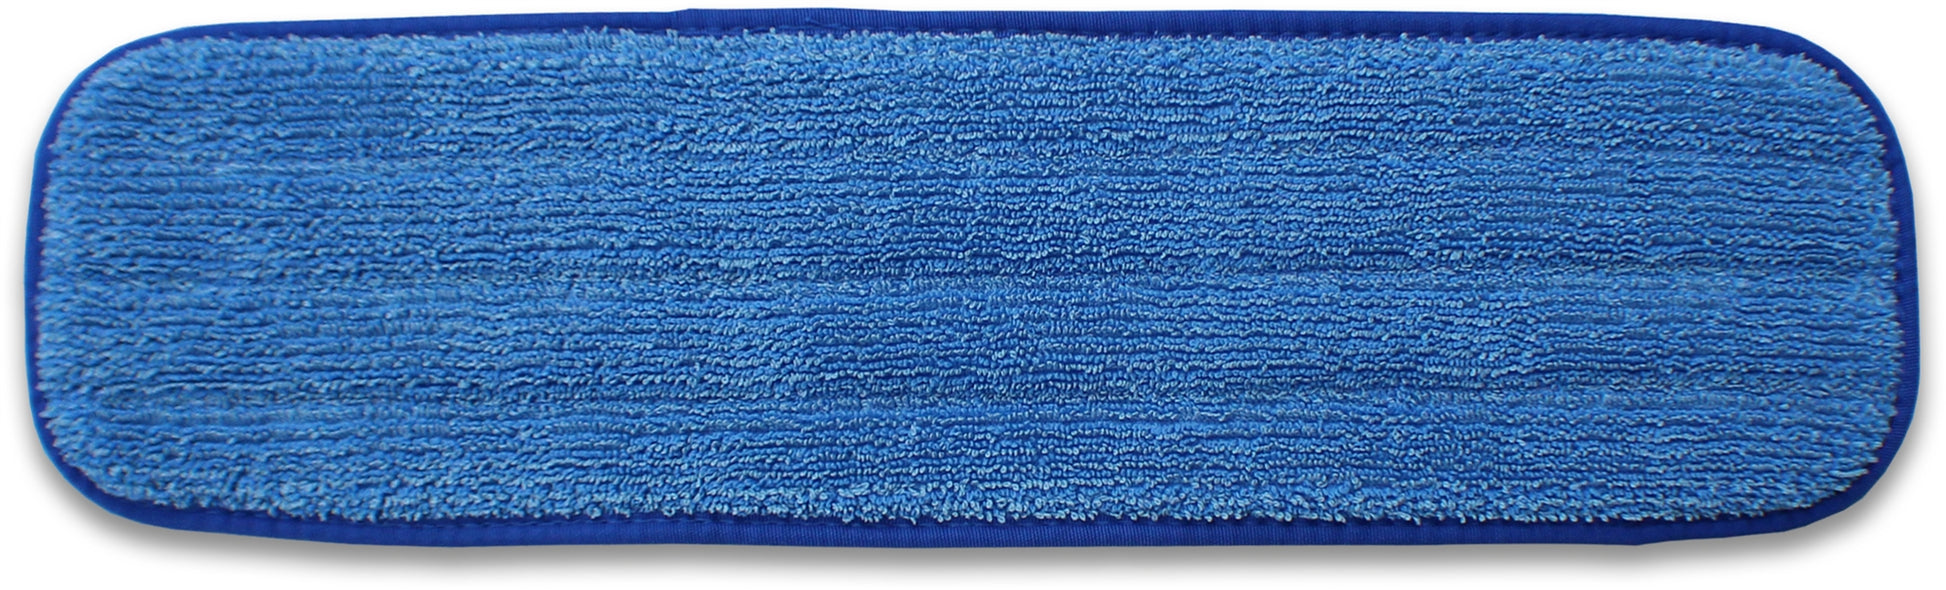 Microfiber Floor Cleaning Mop Pads | 18" | Blue Binding